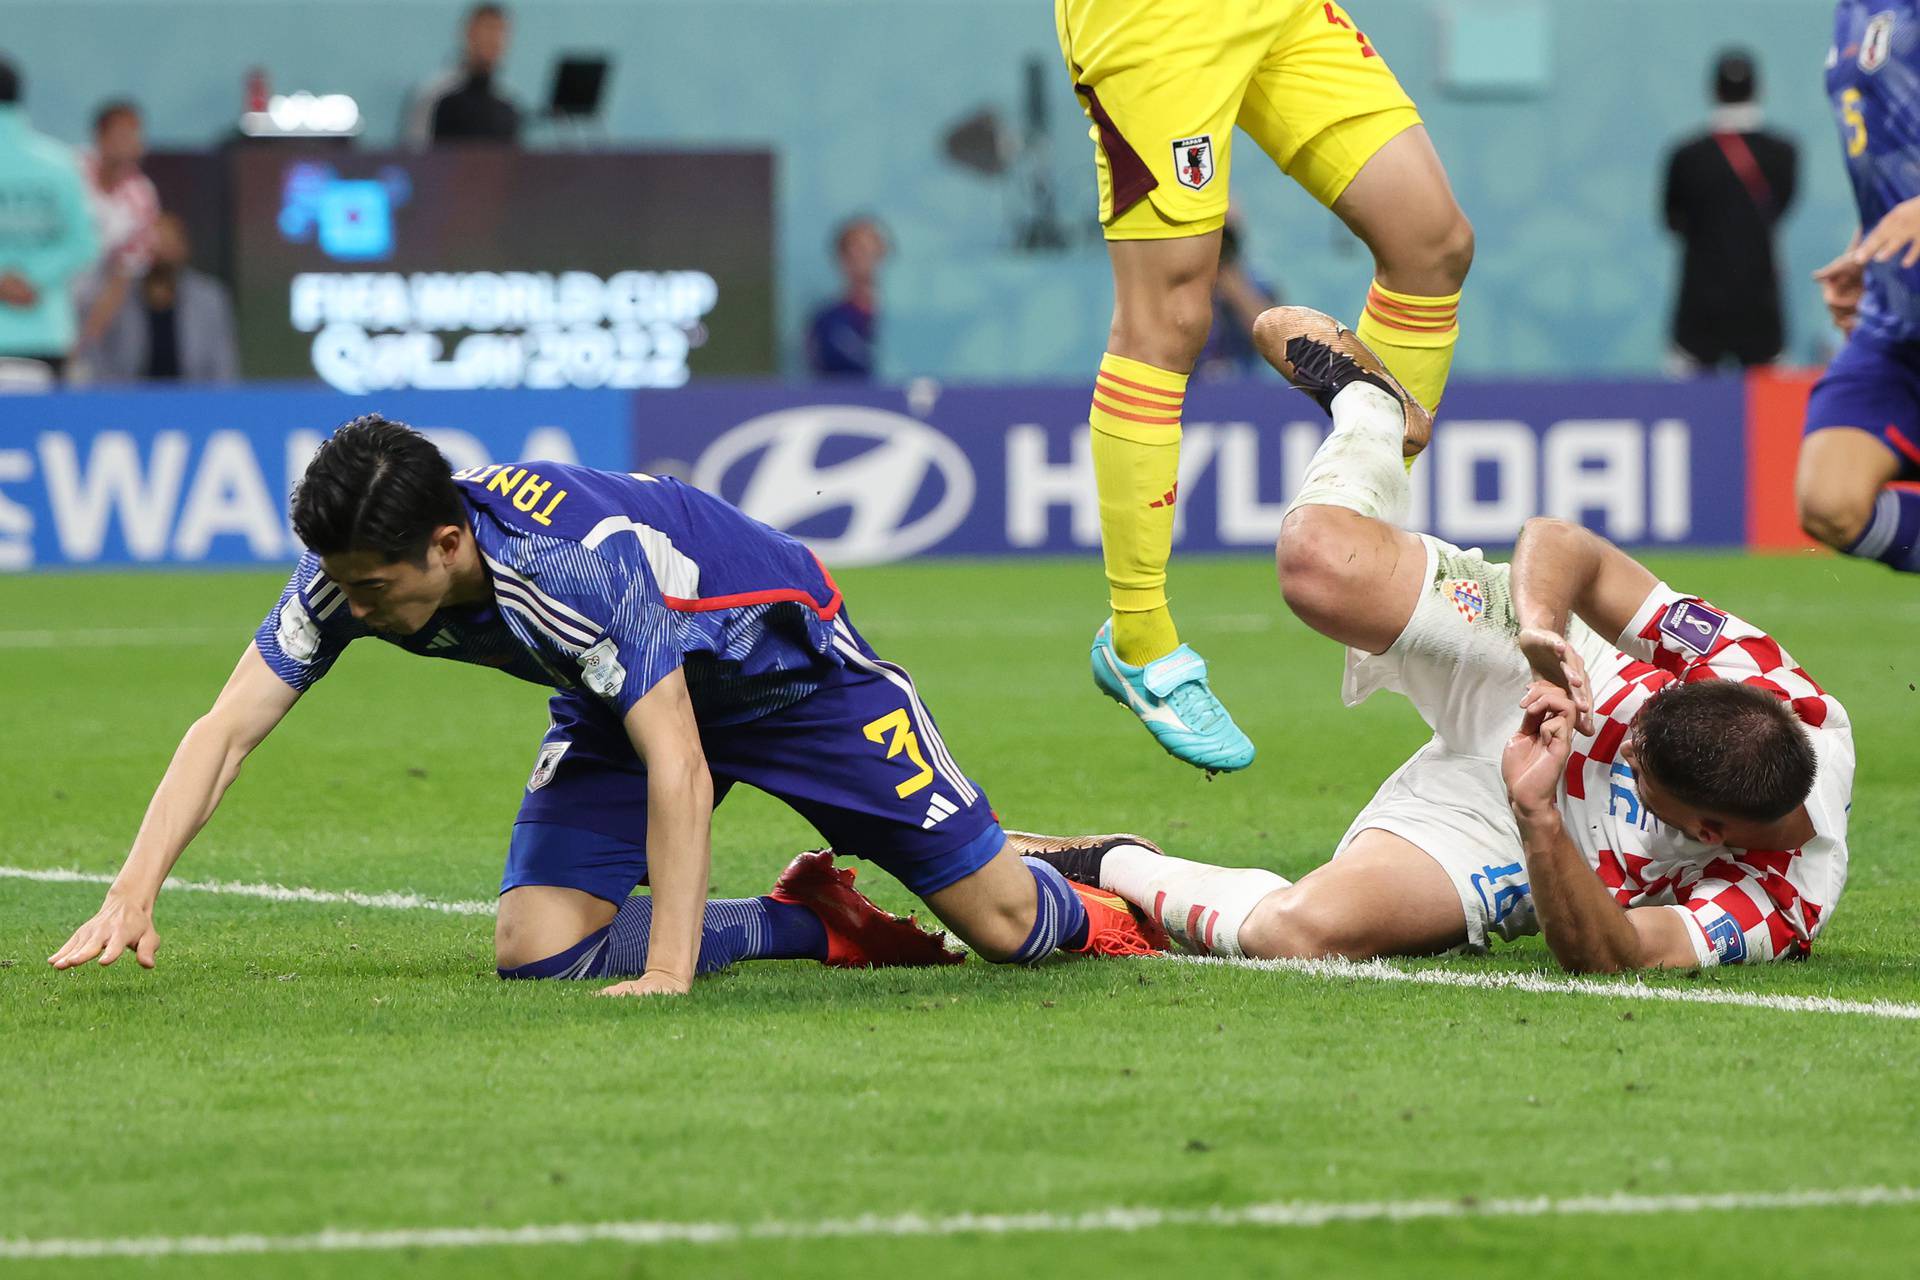 KATAR 2022 - Susret Hrvatske i Japana u osmini finala Svjetskog prvenstva u Kataru